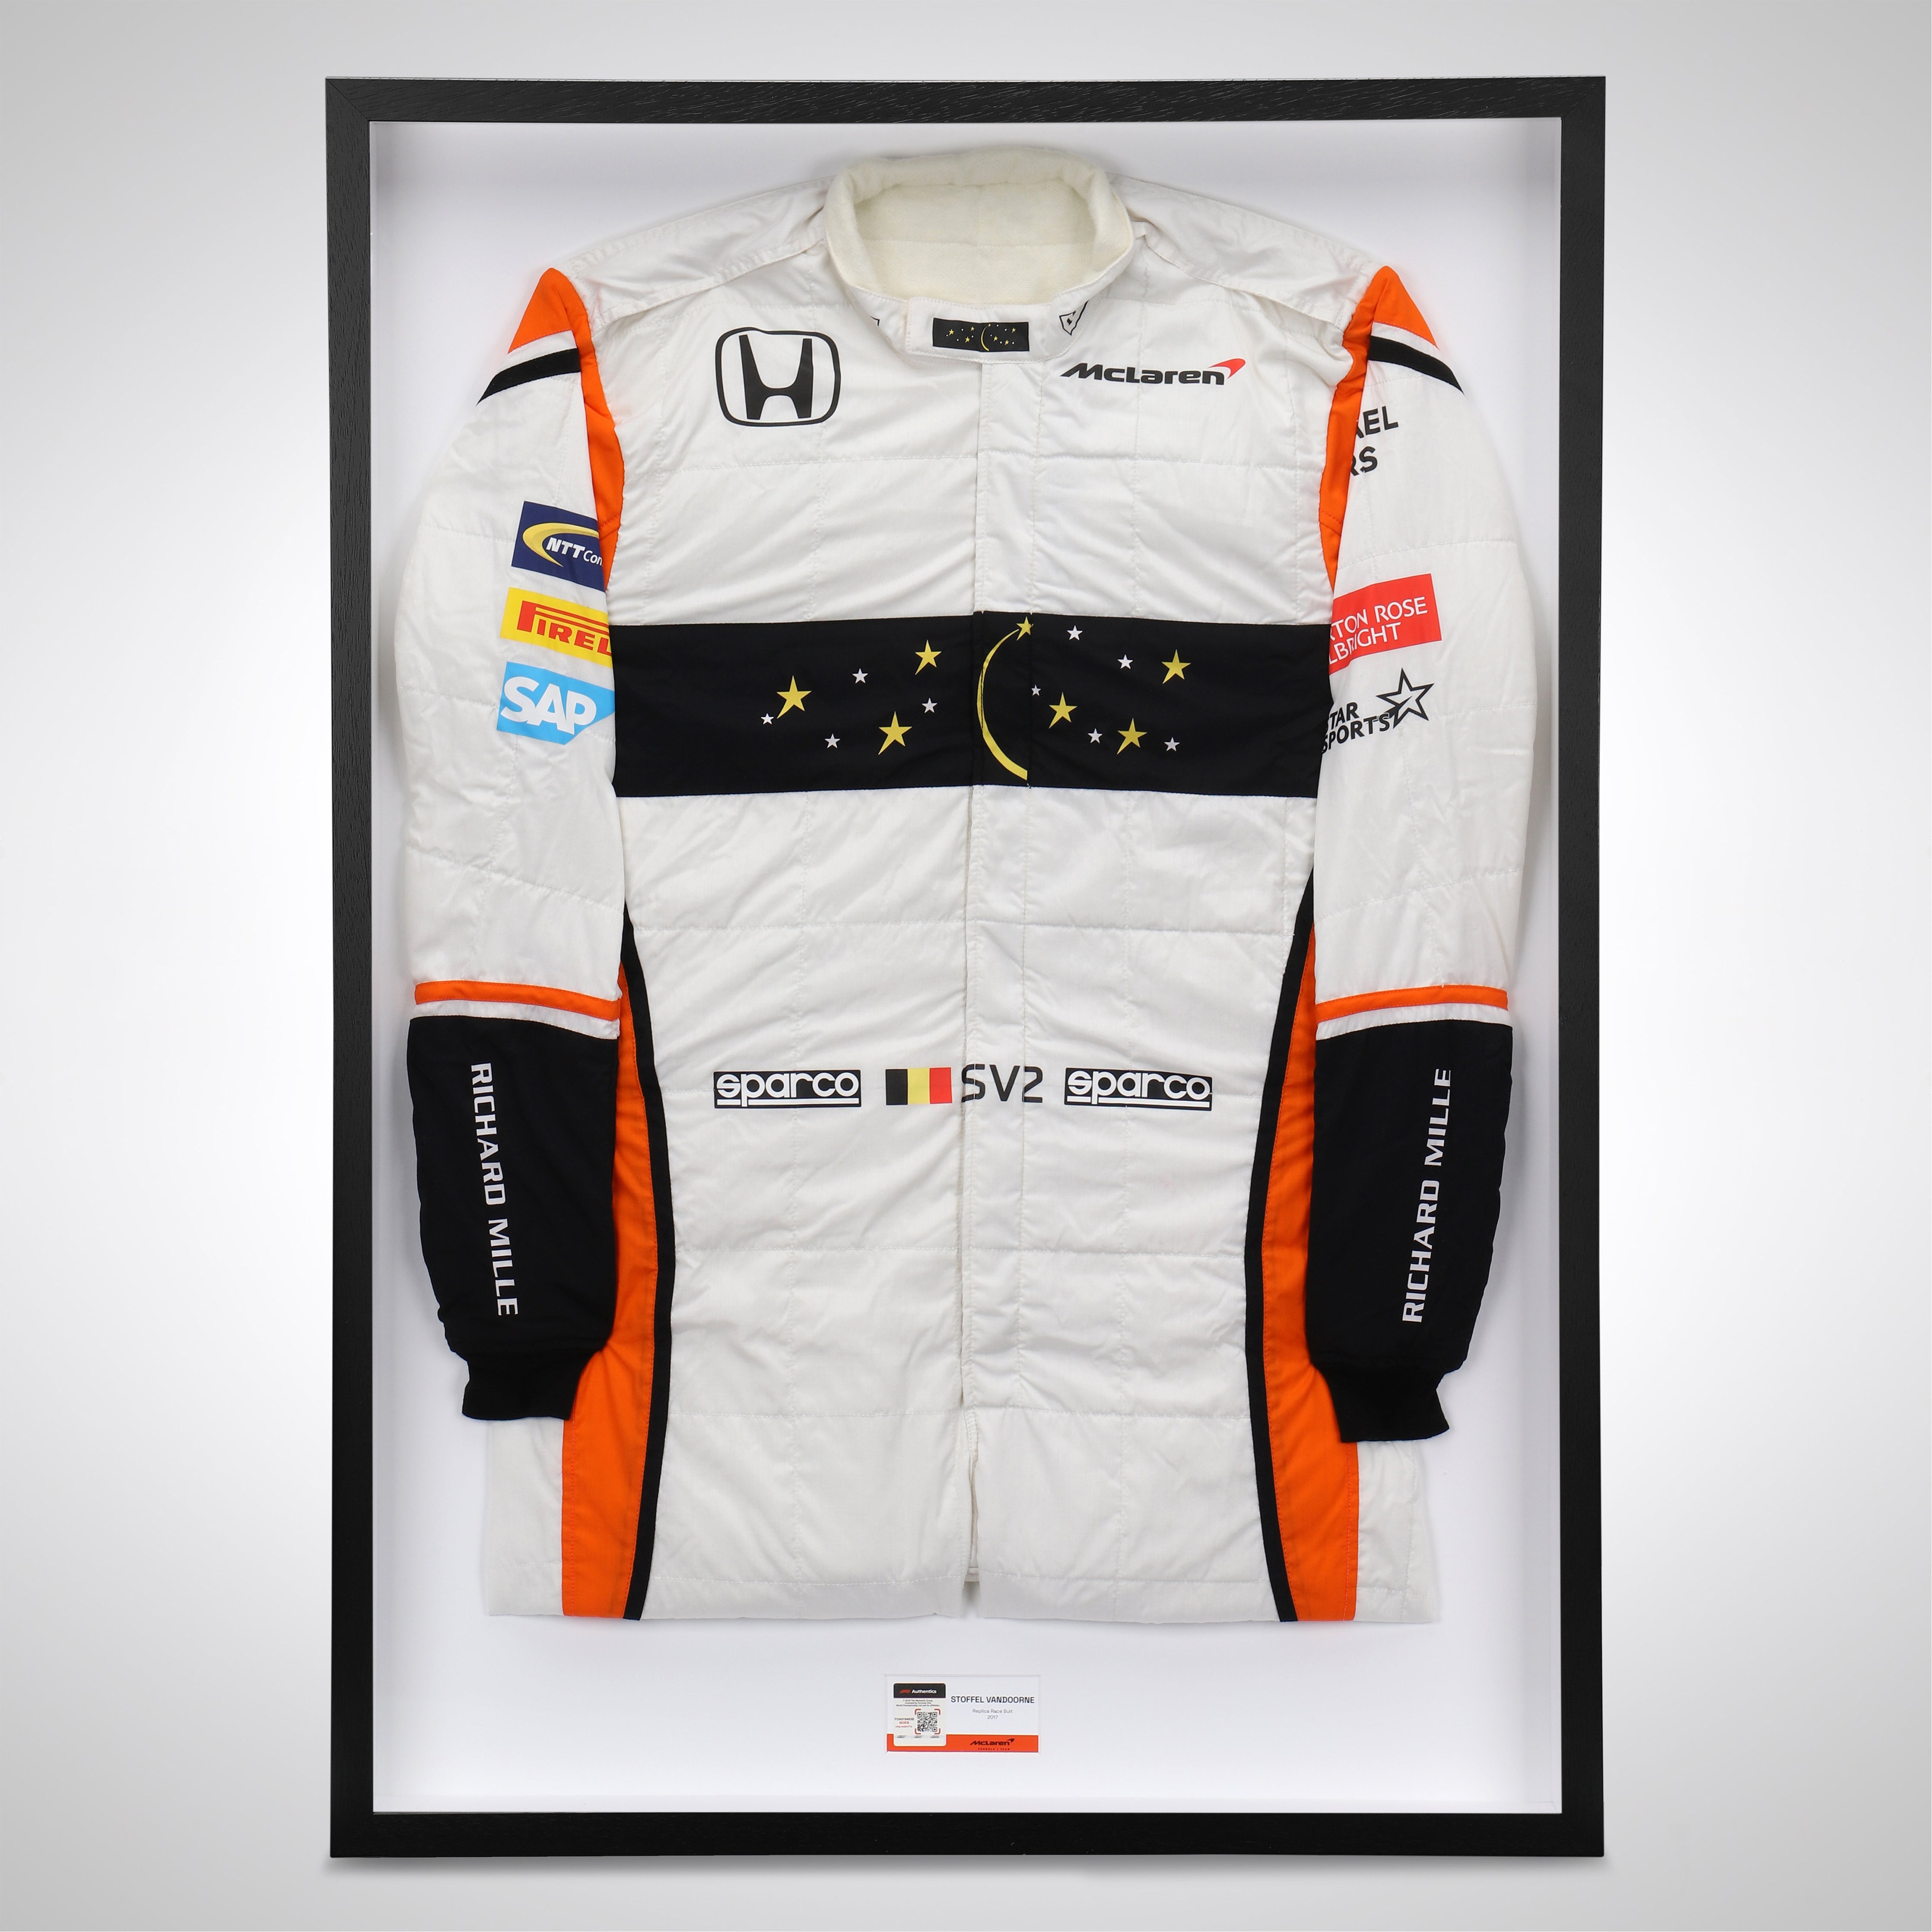 Stoffel Vandoorne 2017 Replica McLaren F1 Team Race Suit with Chandon Star Branding